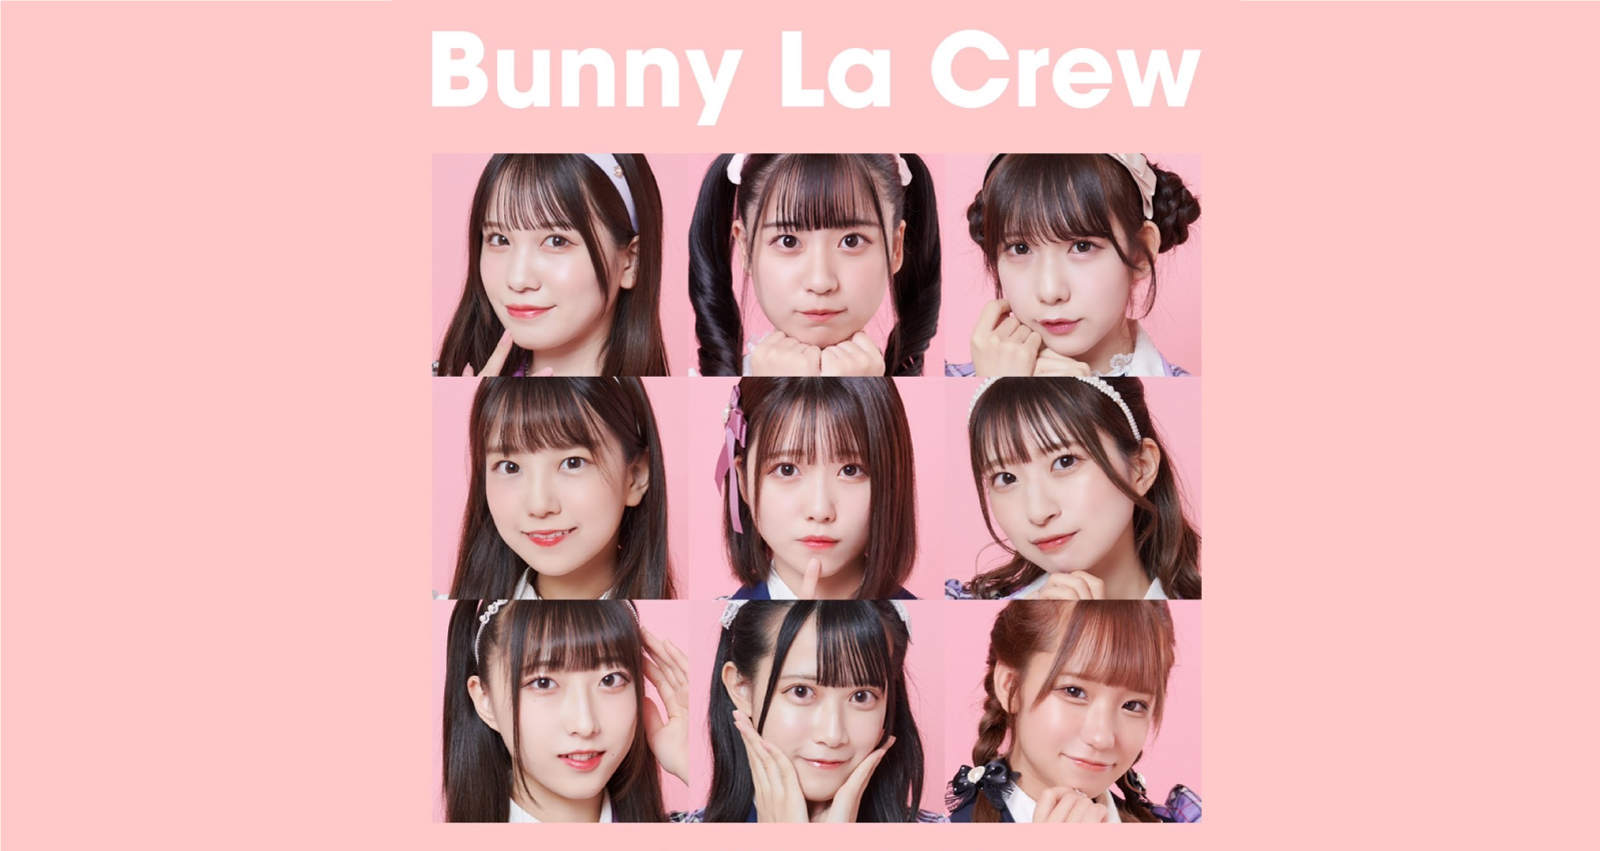 Bunny La Crew 1stワンマンLIVE  -Bunny Attack!! or Cutie Bunny-